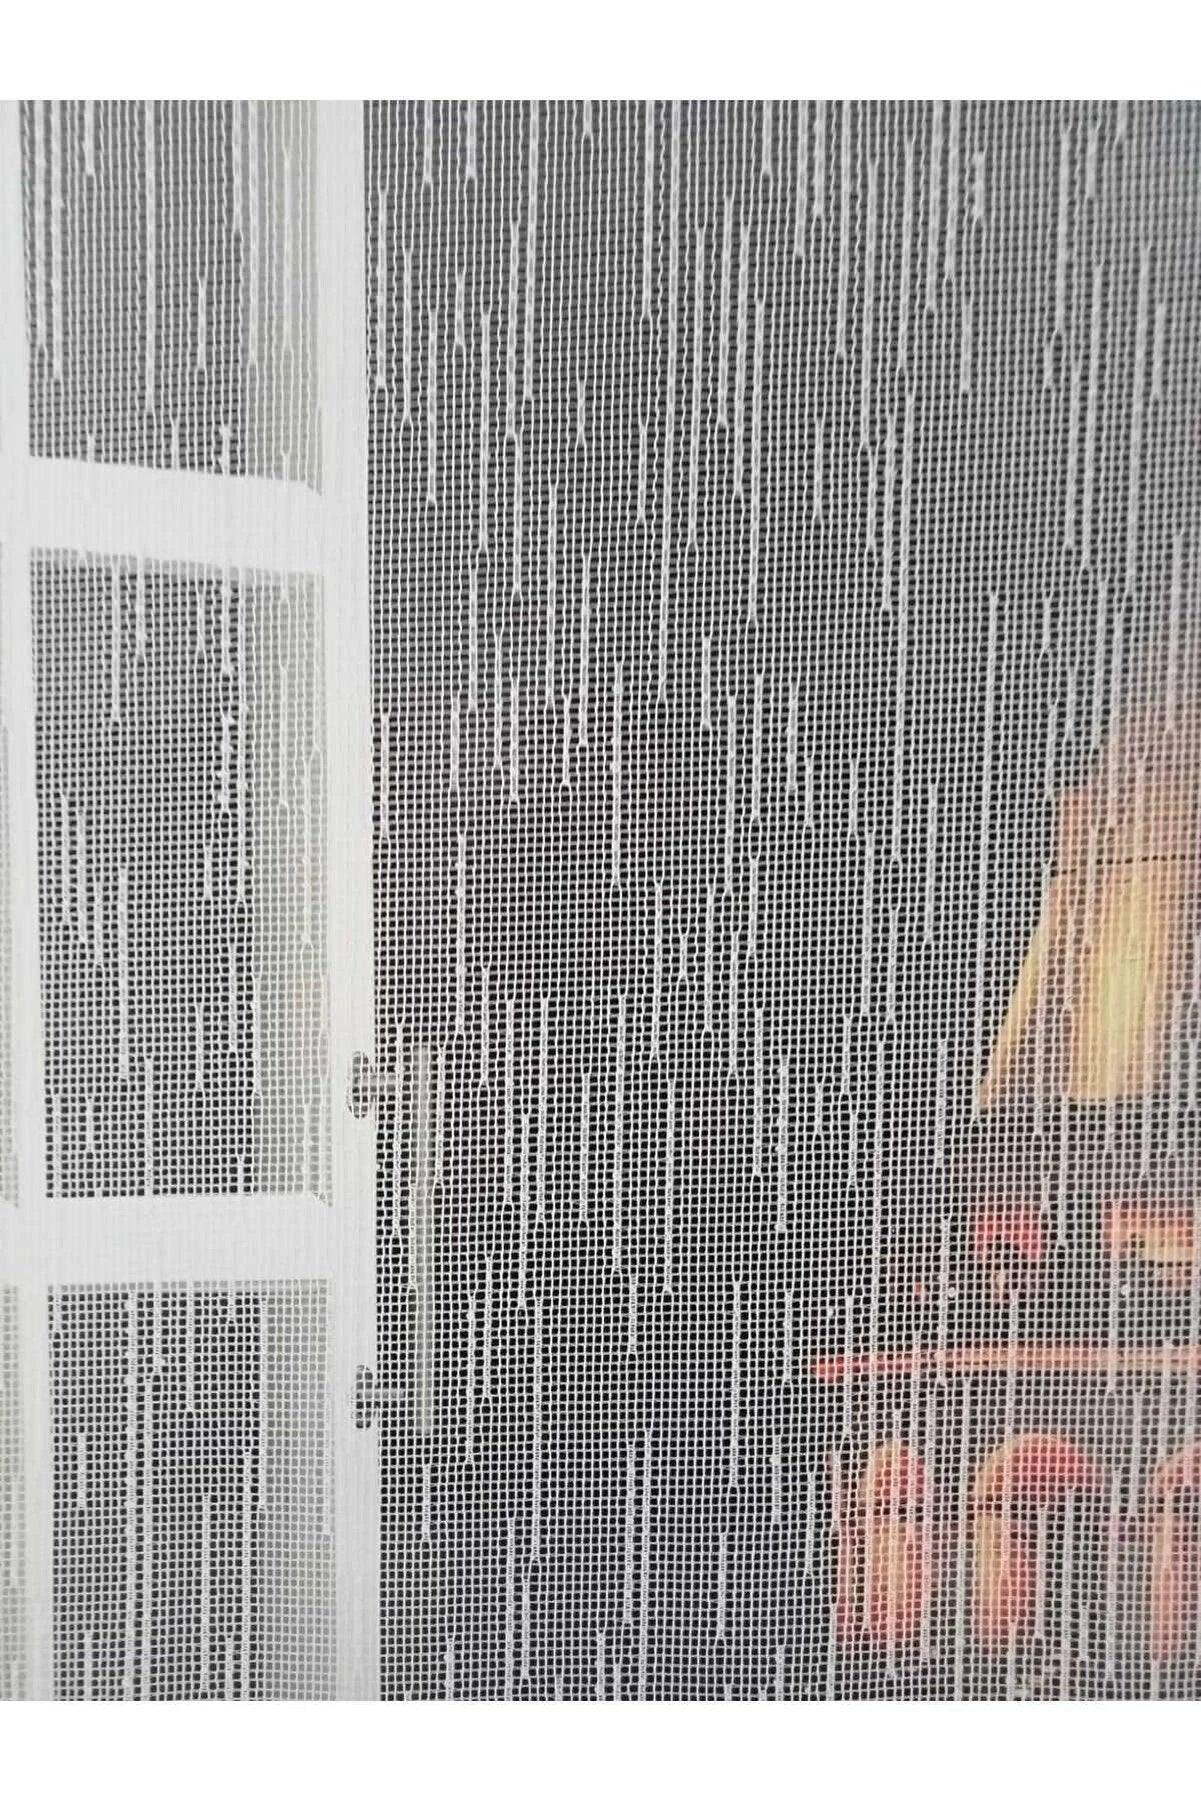 Çift Mekanizmalı Beyaz Yağmur Damla Desenli Tül Stor Perde - evdeyiz.de